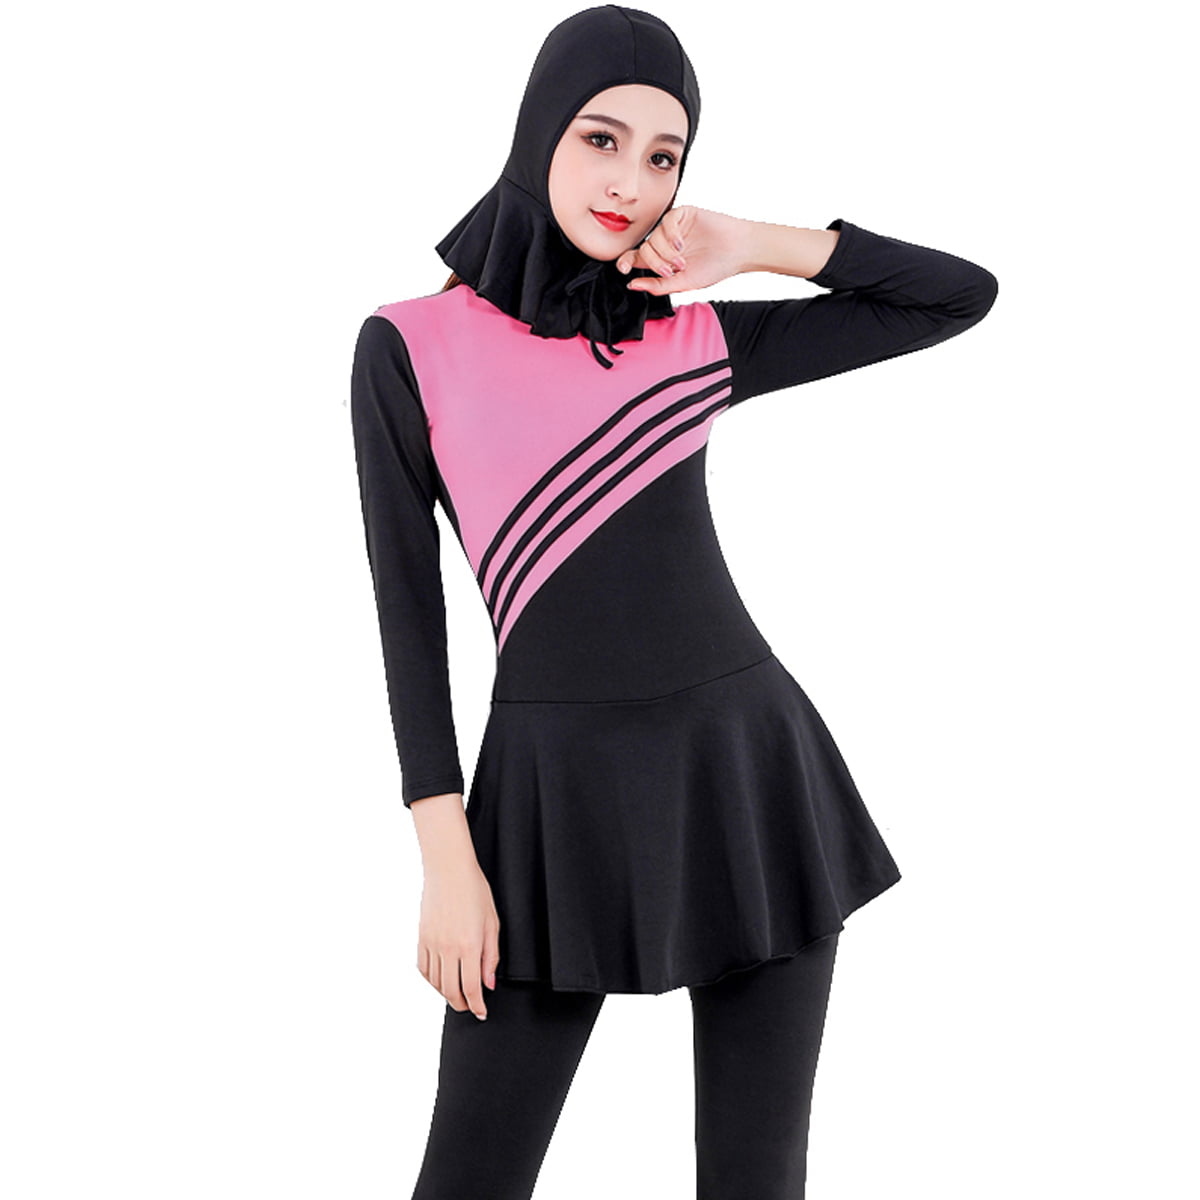 Women Muslim Swimwear Full Coverage Islamic Burkini Swimsuit 3 Pieces Full Body with Hijab Sun Protection 